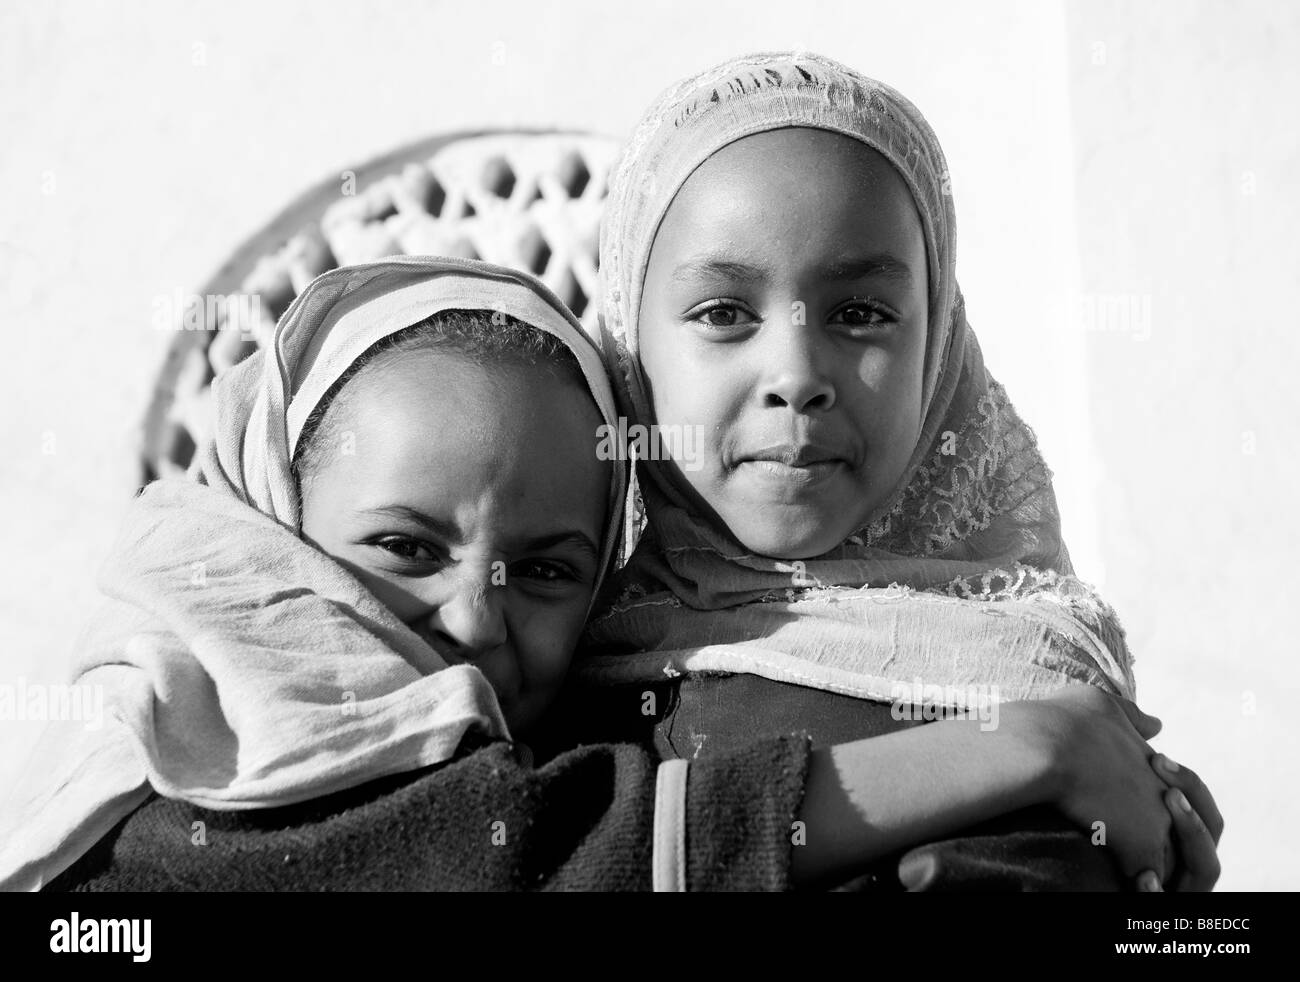 La vieille ville de Harar Ethiopie enfants filles musulmanes de la ville Banque D'Images